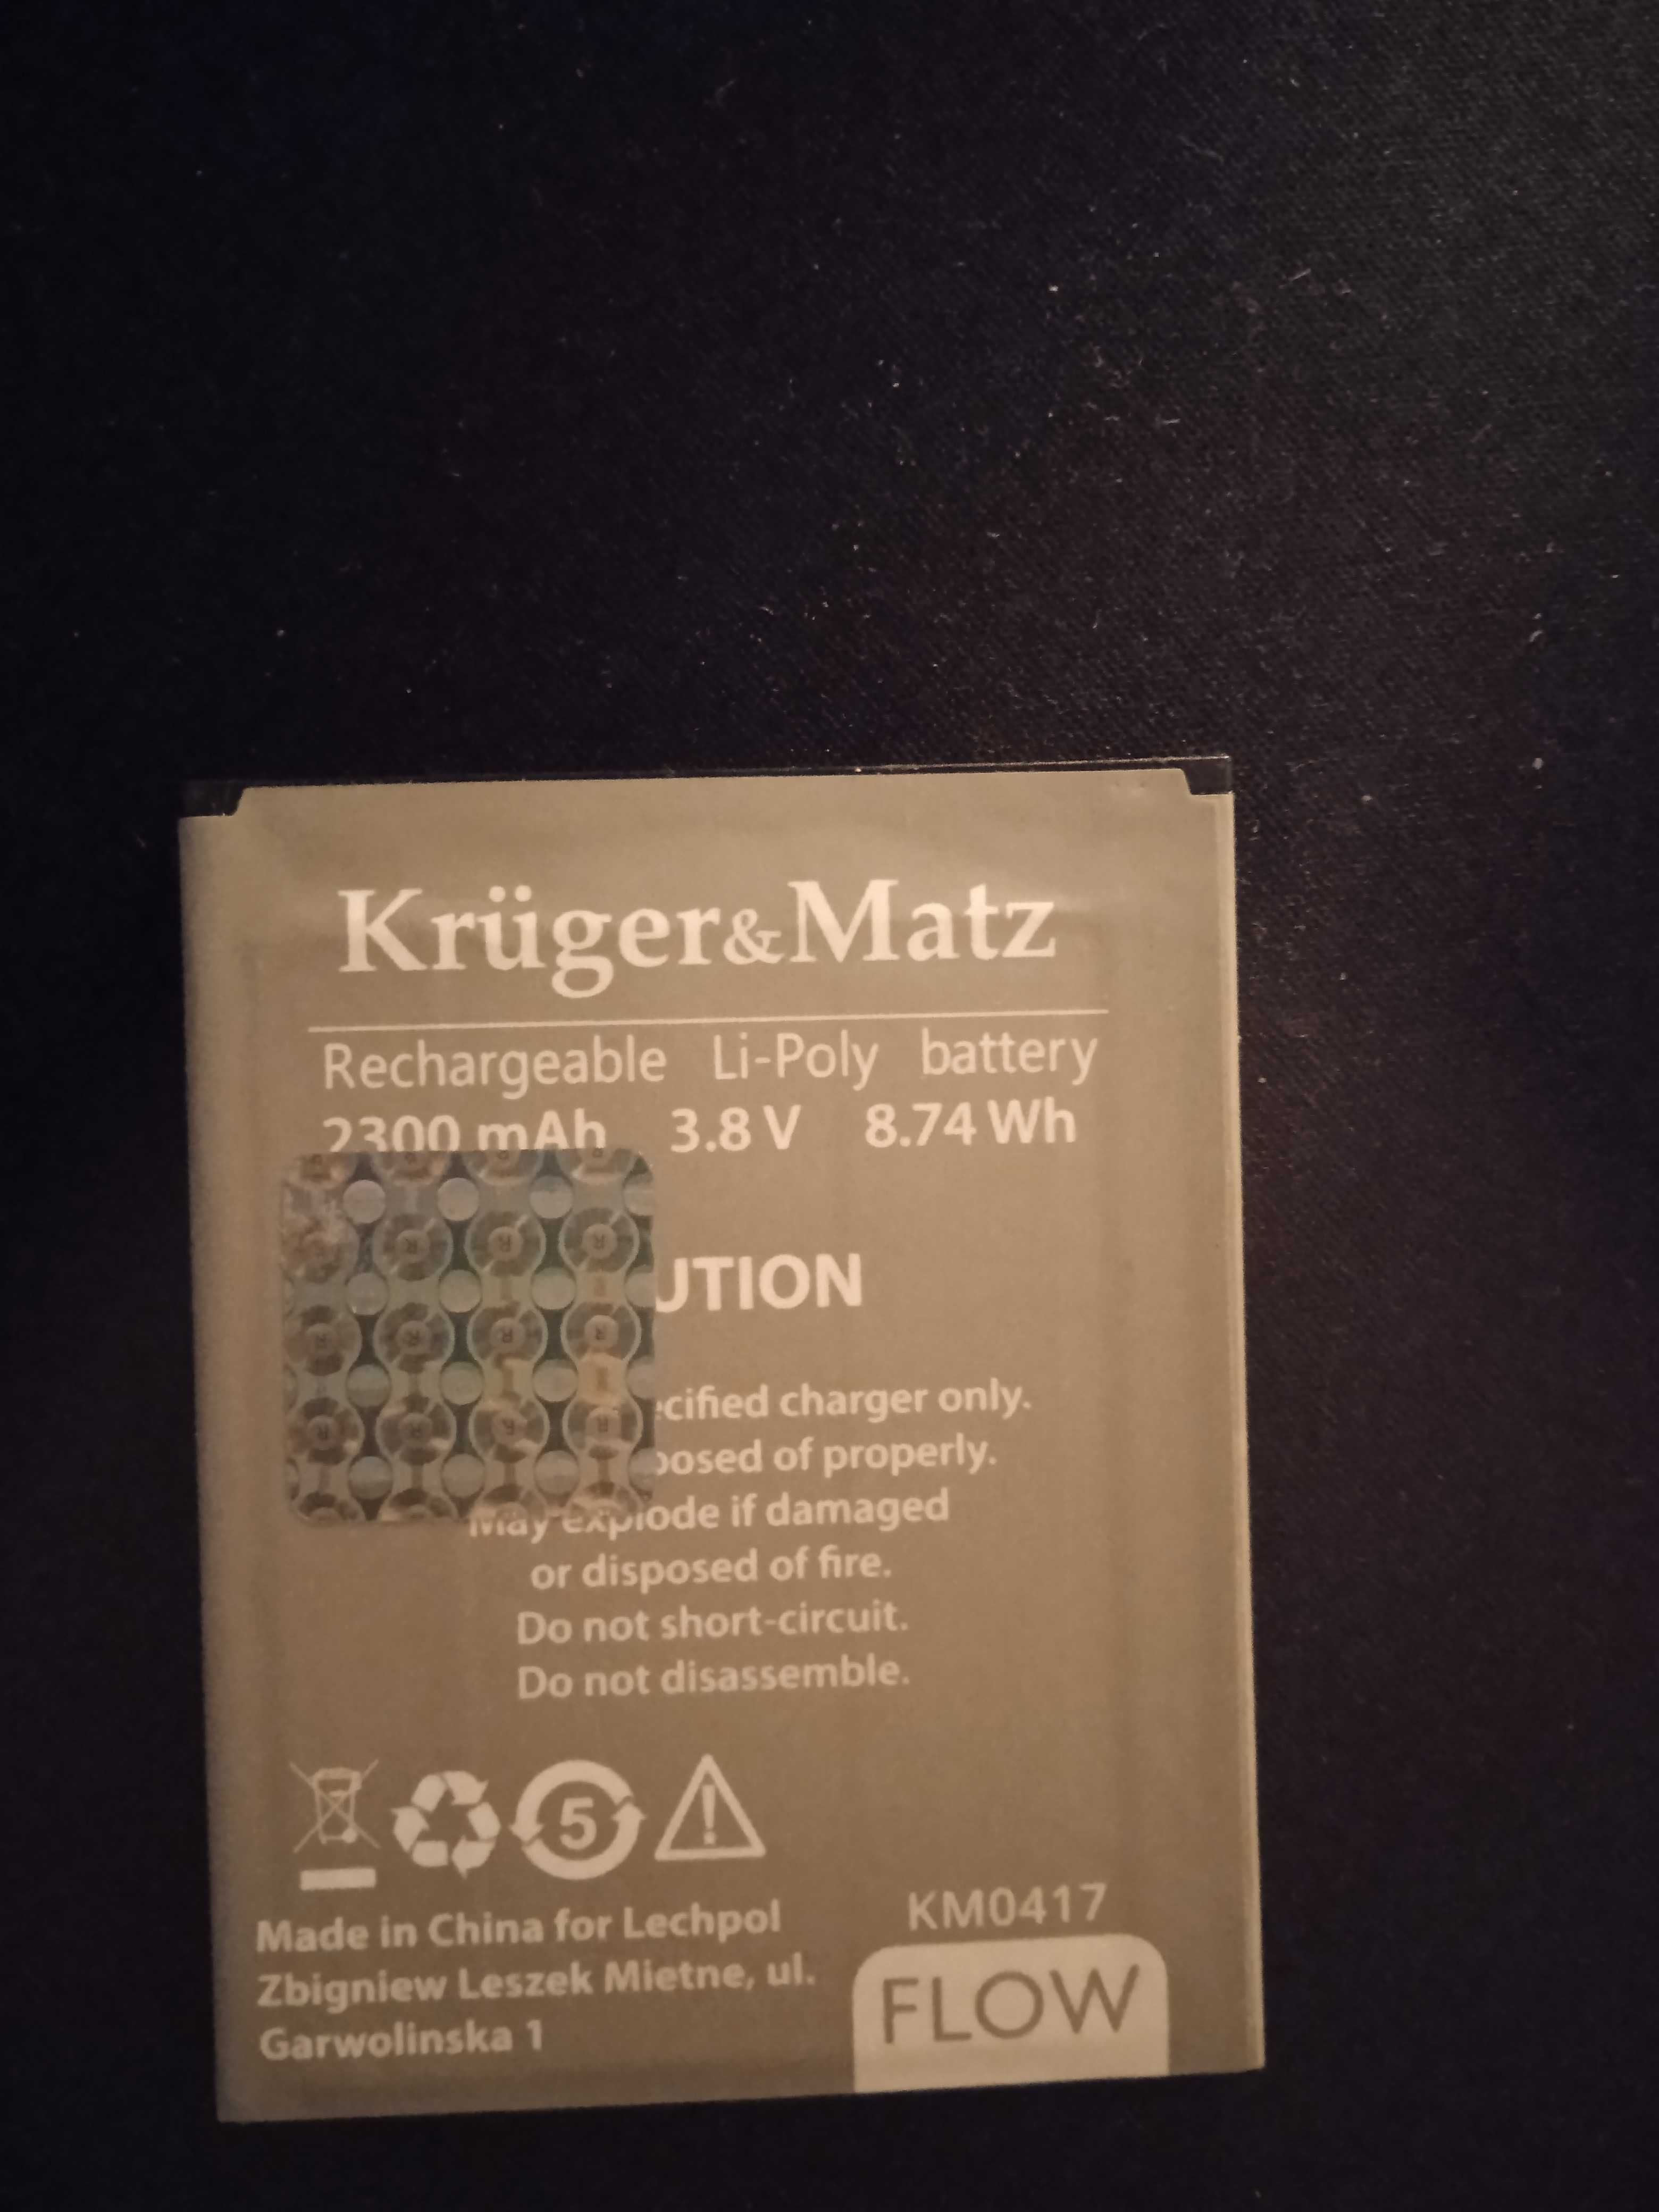 Kruger&Matz Flow 2 Bateria Li-Poly 2300mAh 3.8V KM0417